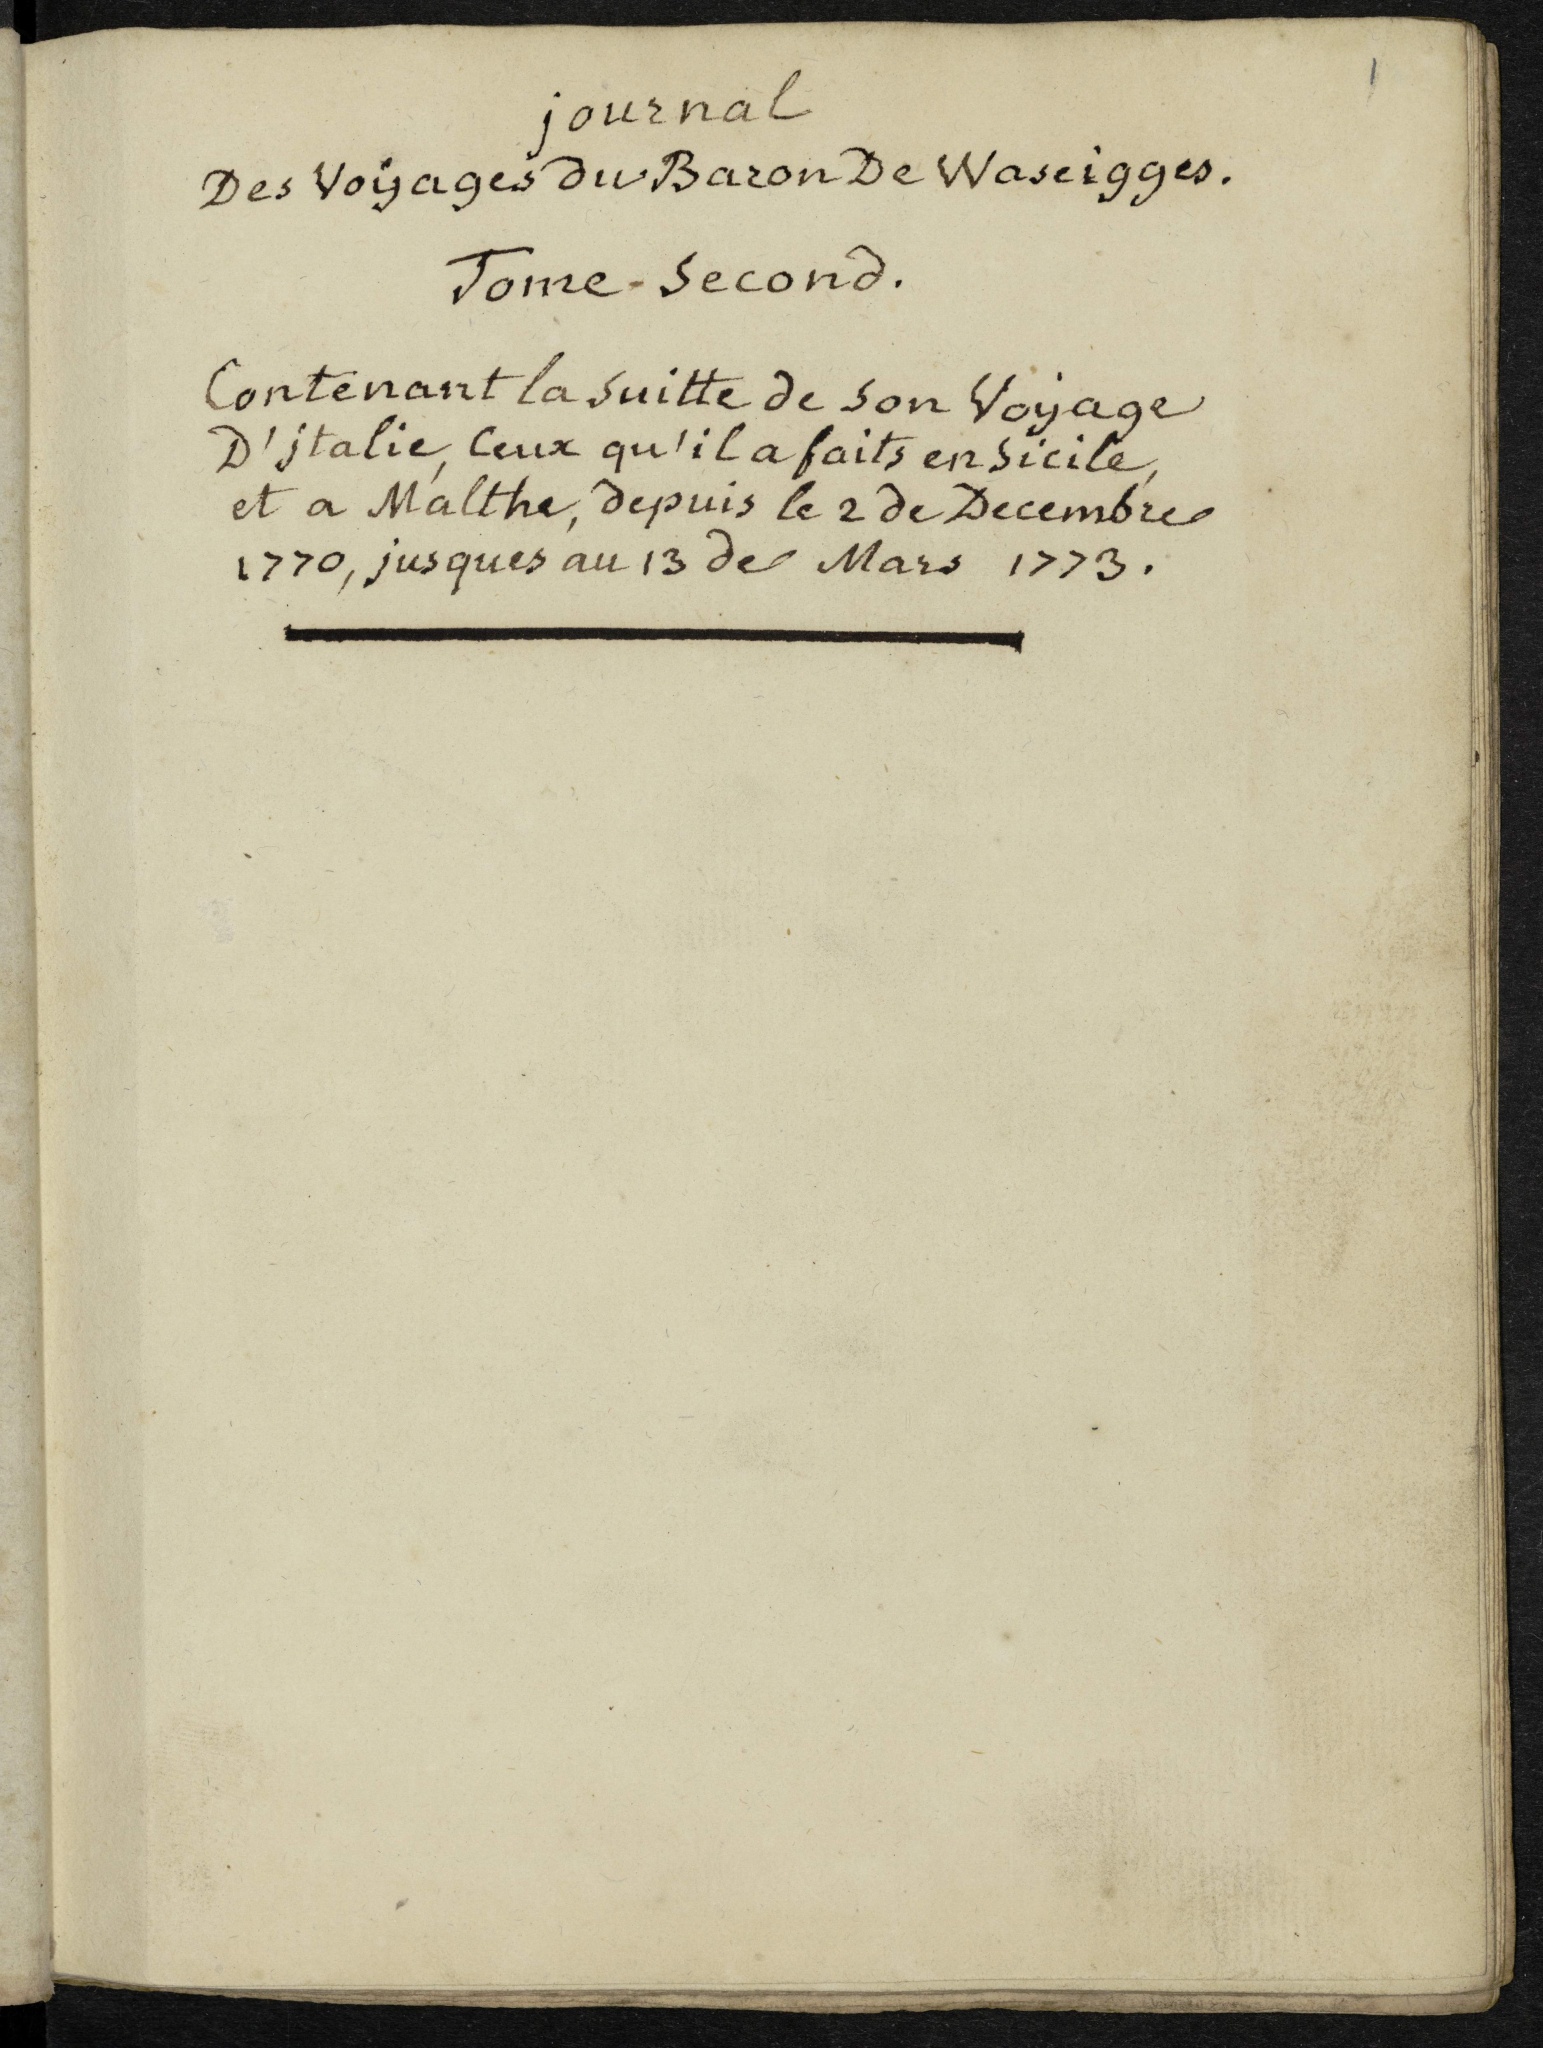 Journal de mes voyages (1767-1774).